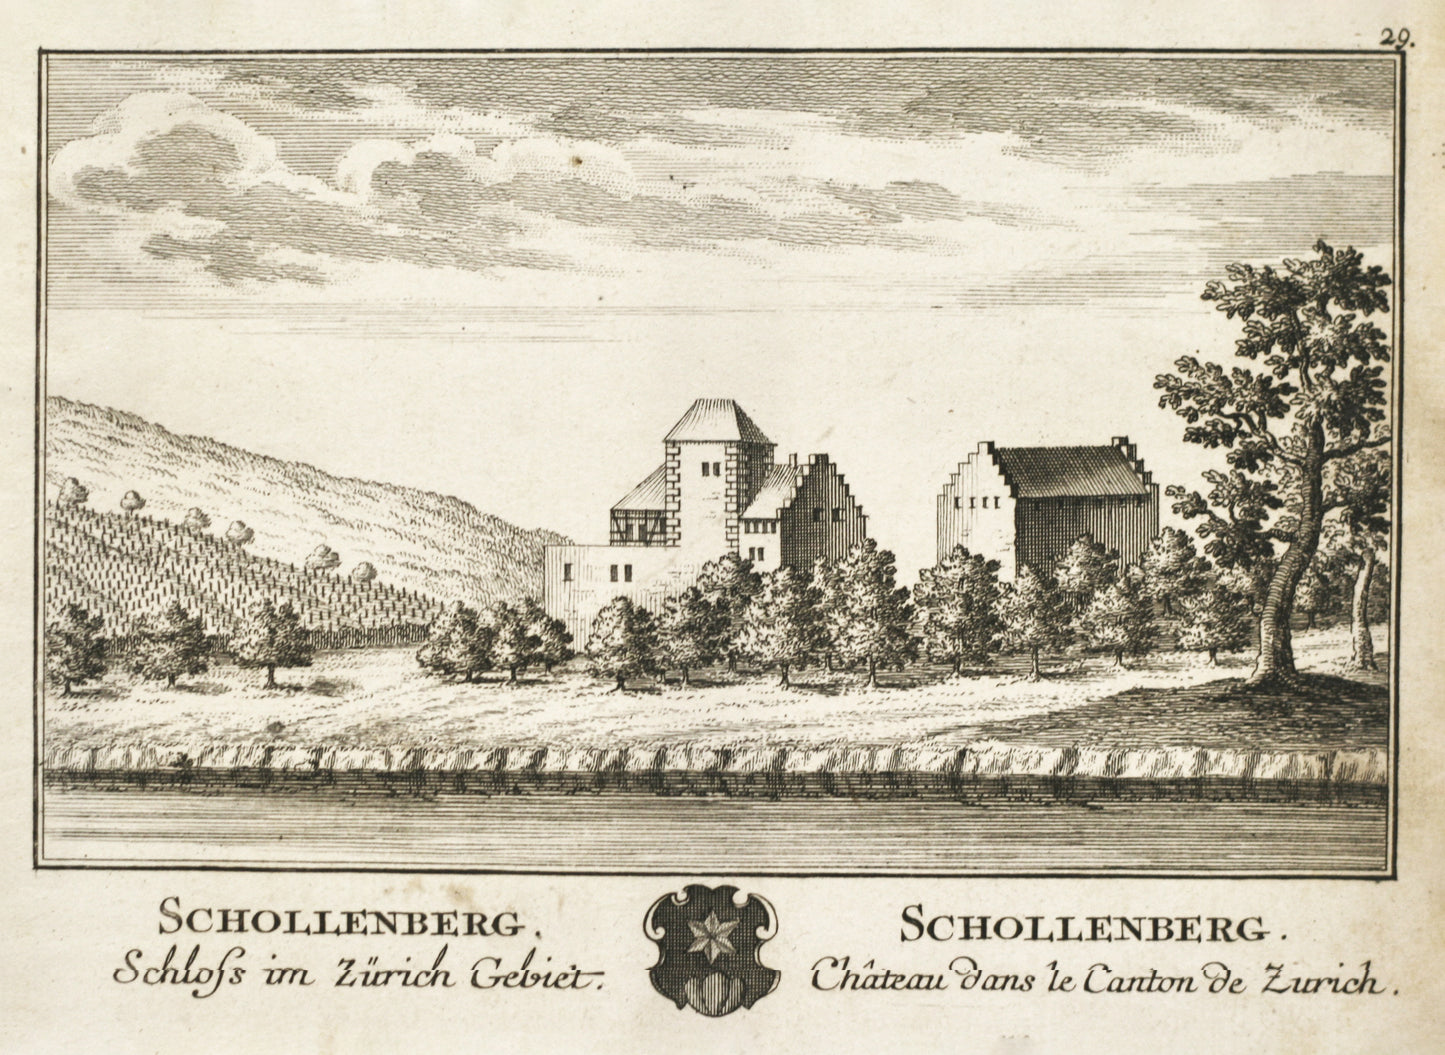 Schollenberg